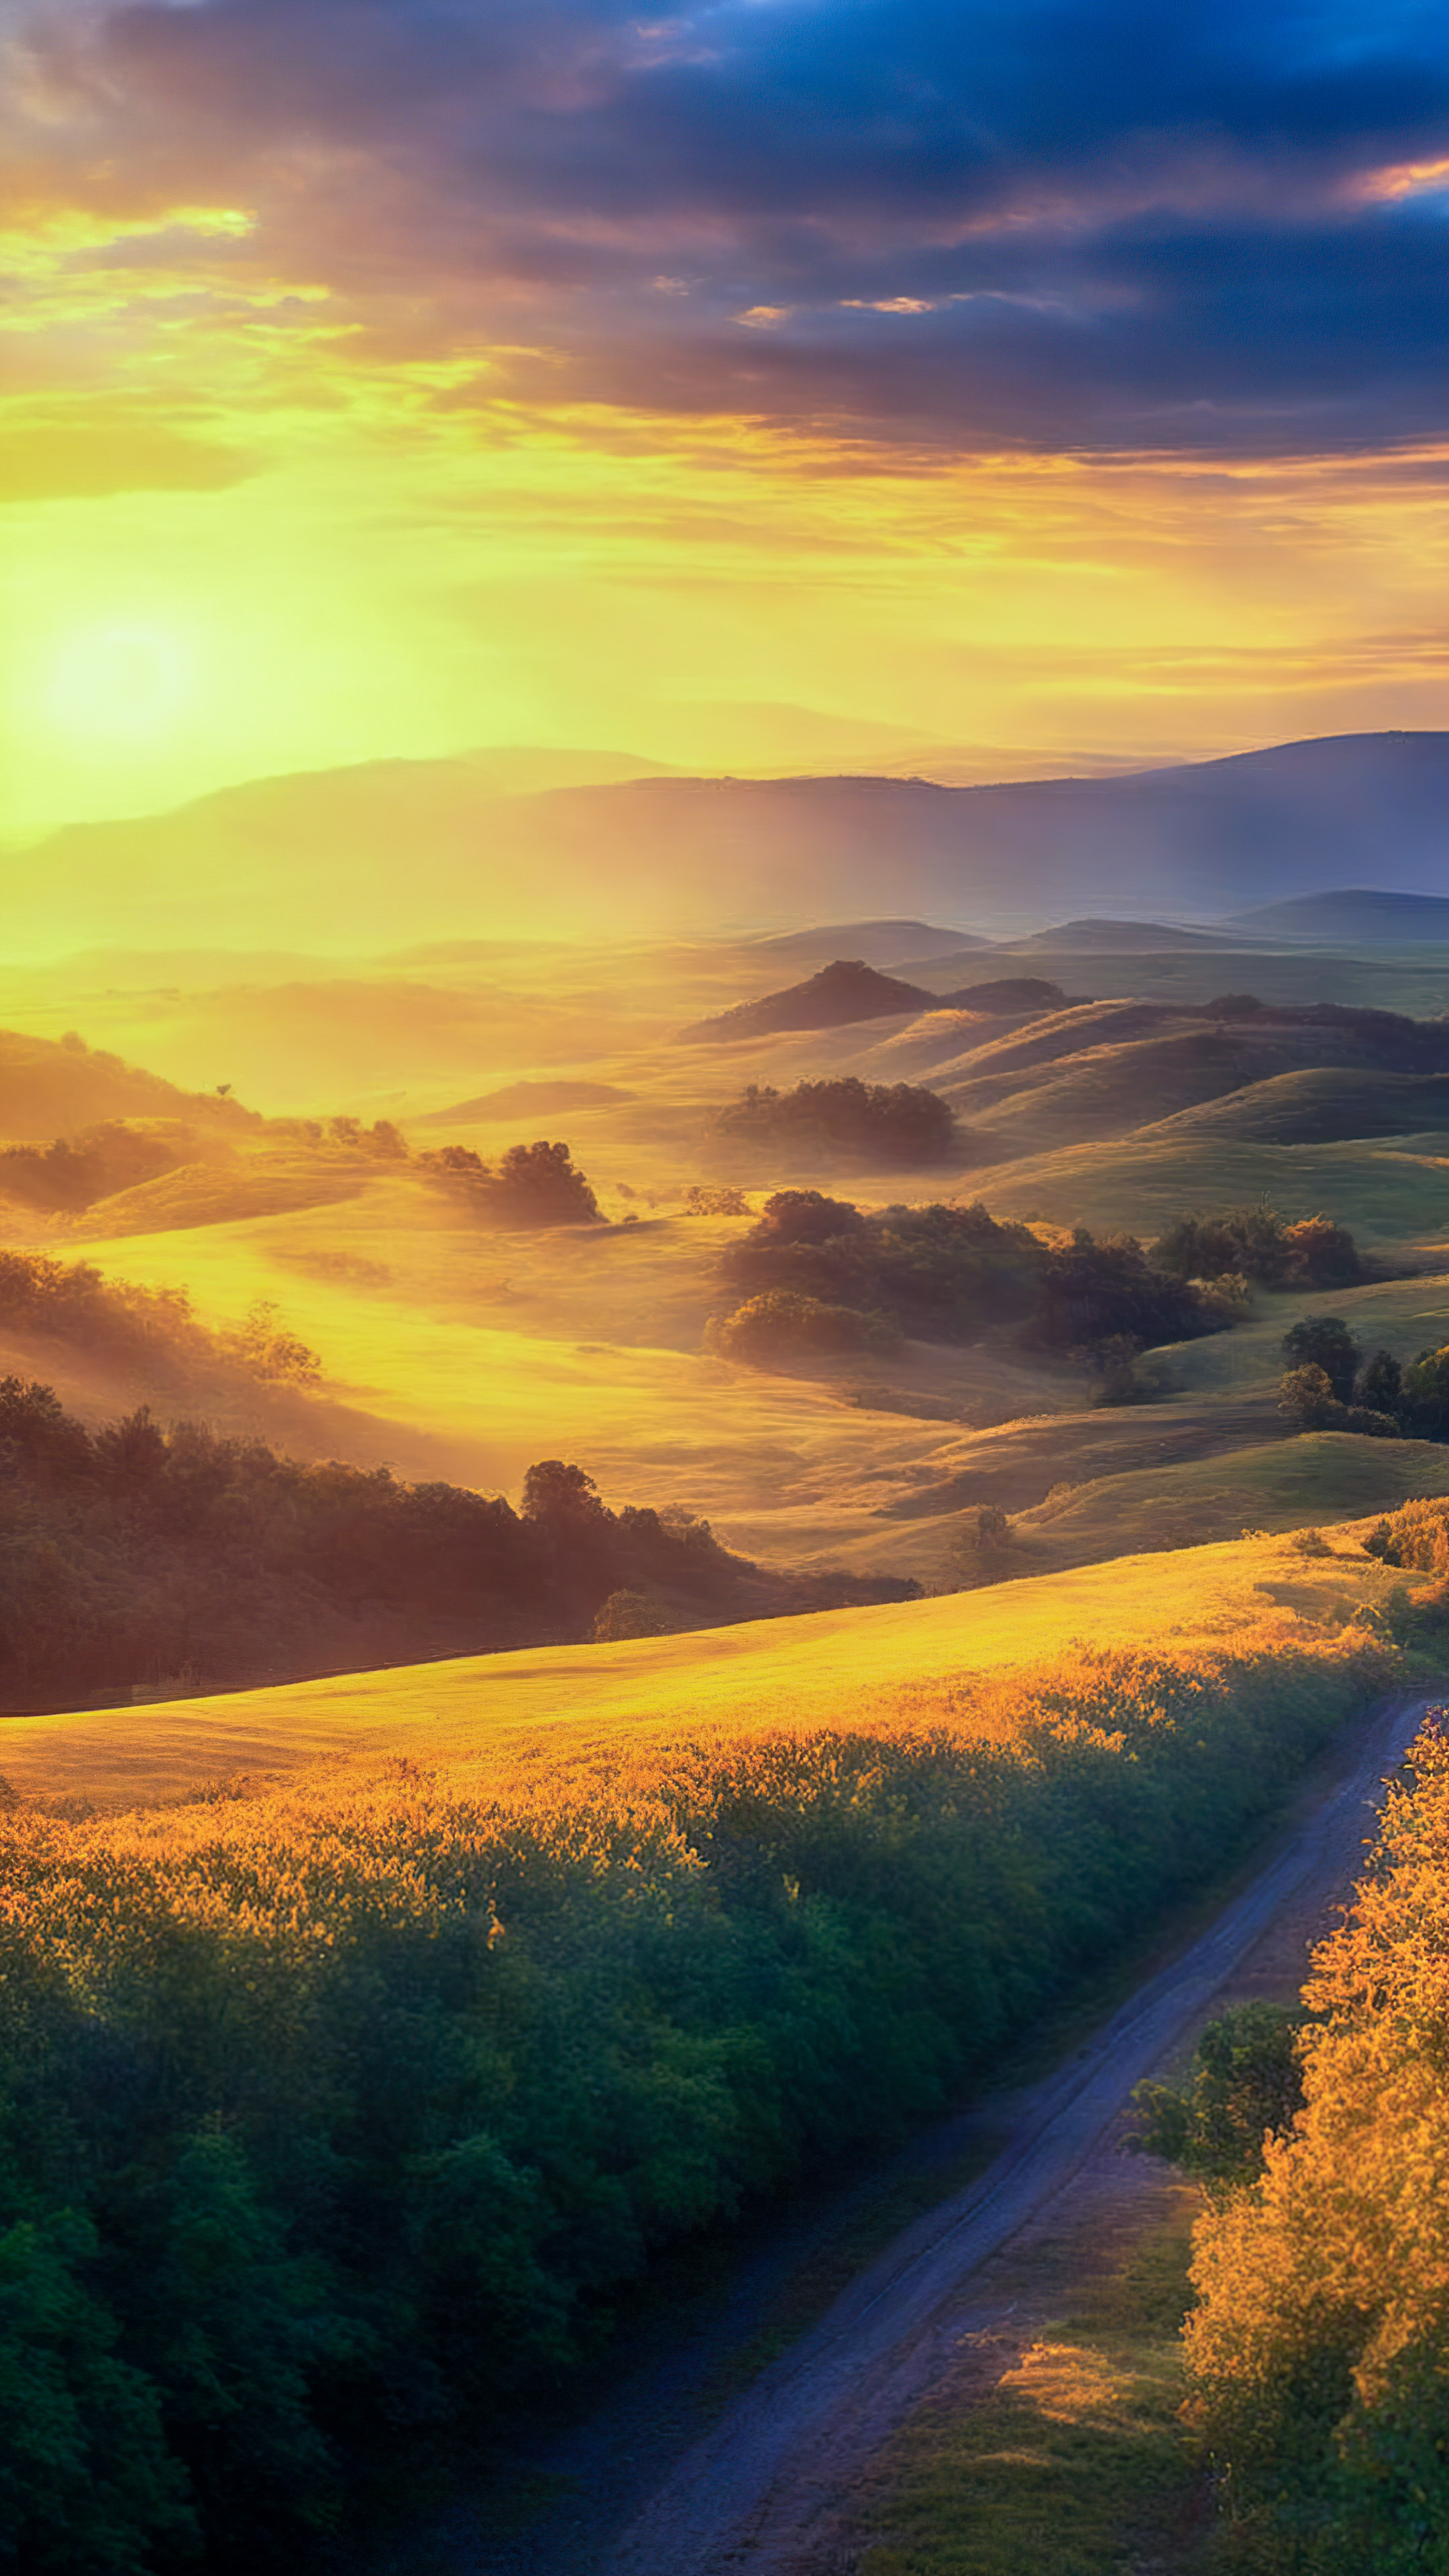 Capturez la brillance du ciel avec notre fond d'écran, présentant un lever de soleil à couper le souffle sur une campagne tranquille, avec des collines ondulantes et une lueur dorée chaleureuse.